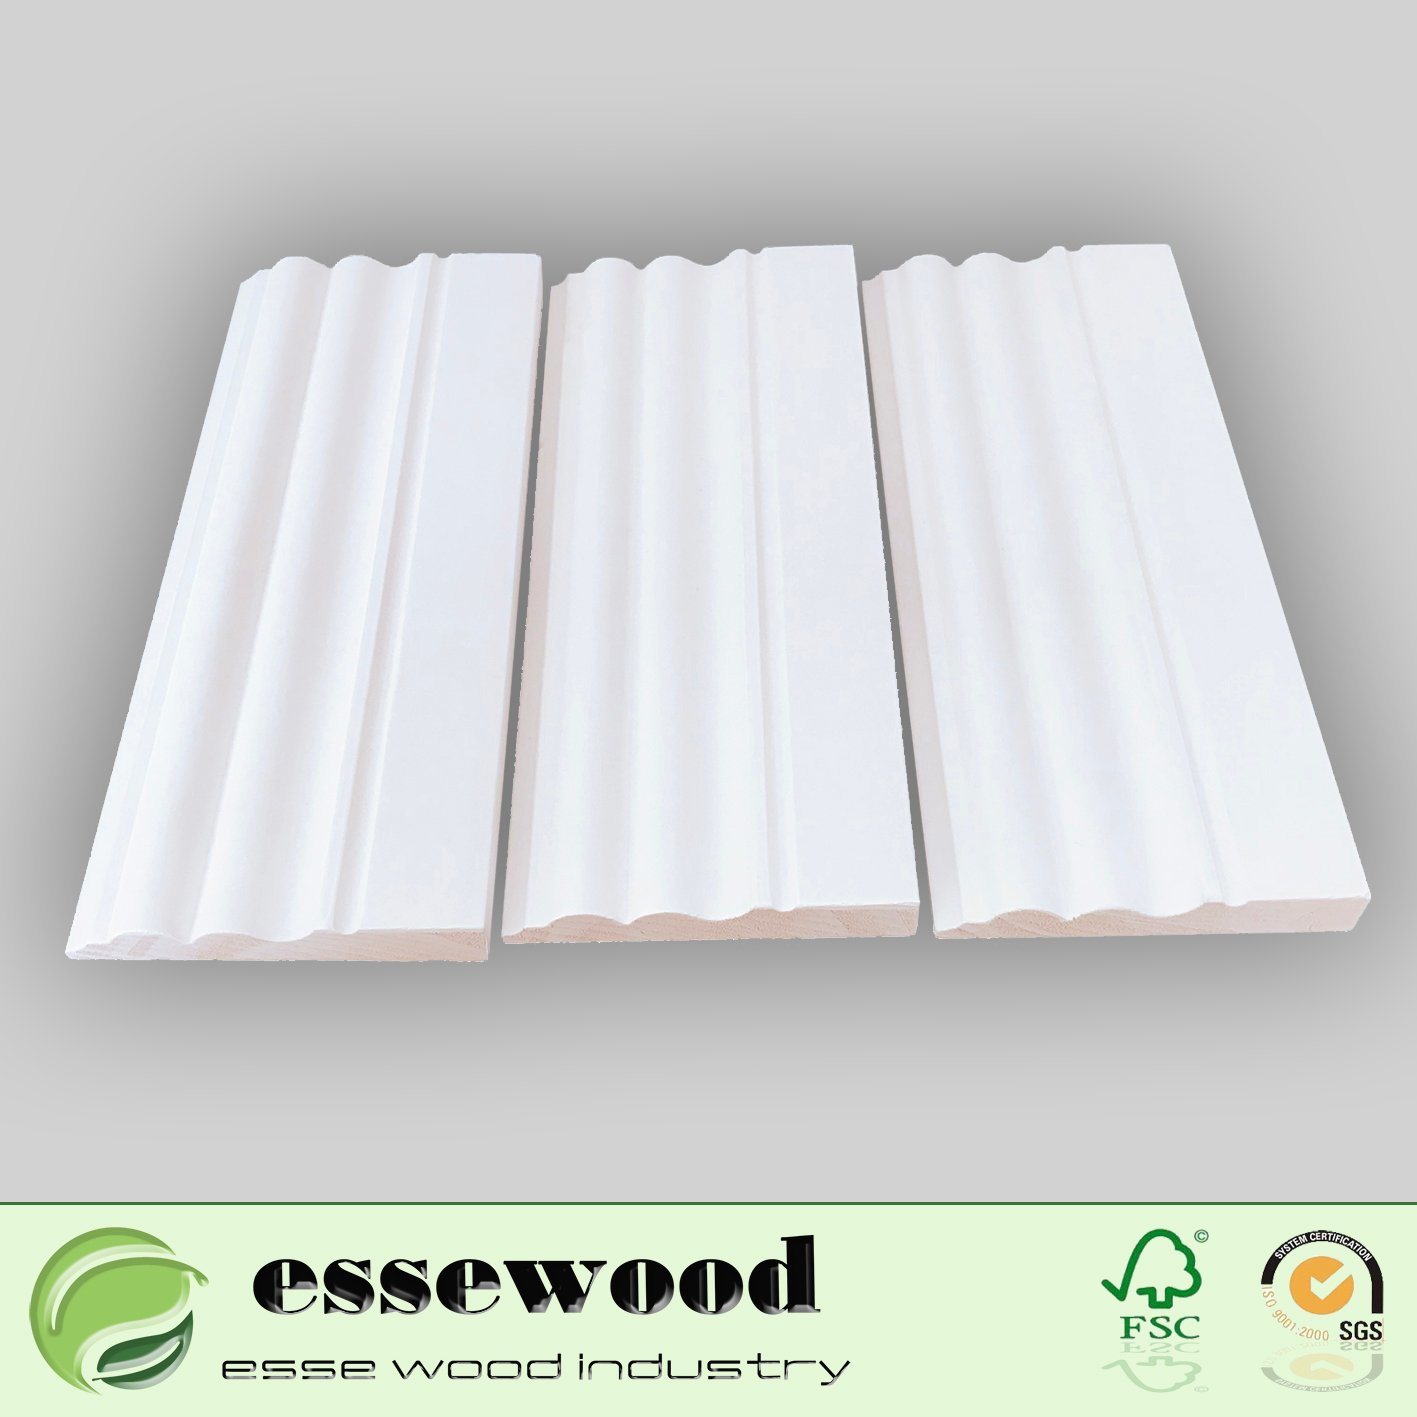 Waterproof Flooring Accessories Wooden Skirting Board Baseboard for Laminate Floor